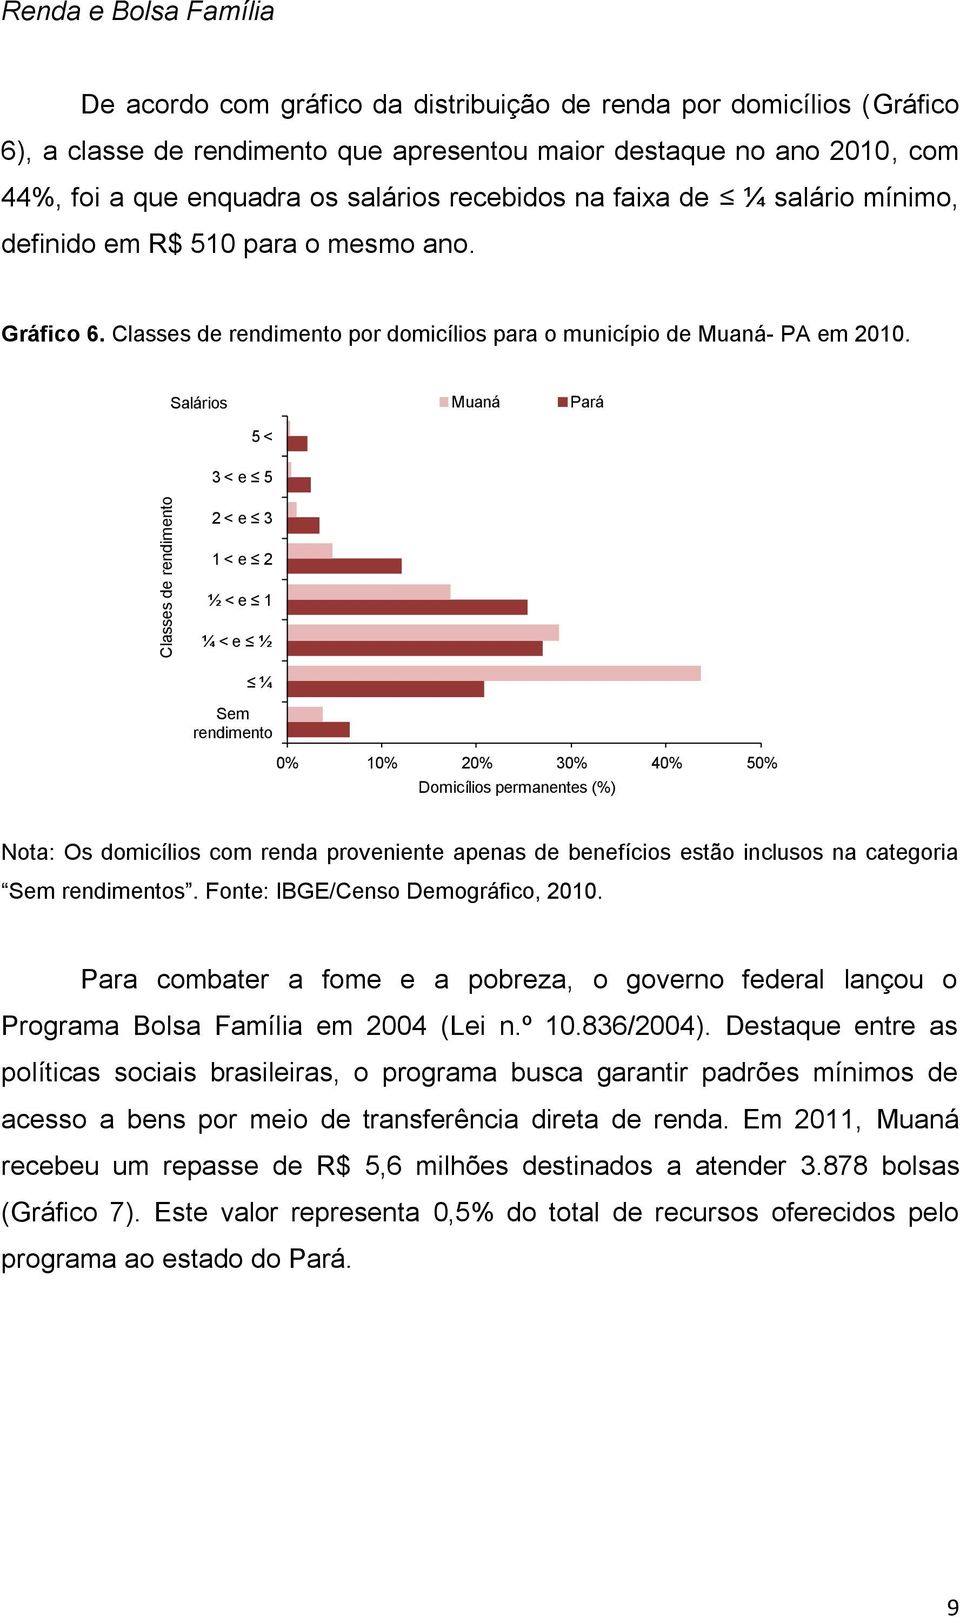 Salários Muaná Pará 5 < 3 < e 5 2 < e 3 1 < e 2 ½ < e 1 ¼ < e ½ ¼ Sem rendimento % 1% 2% 3% 4% 5% Domicílios permanentes (%) Nota: Os domicílios com renda proveniente apenas de benefícios estão